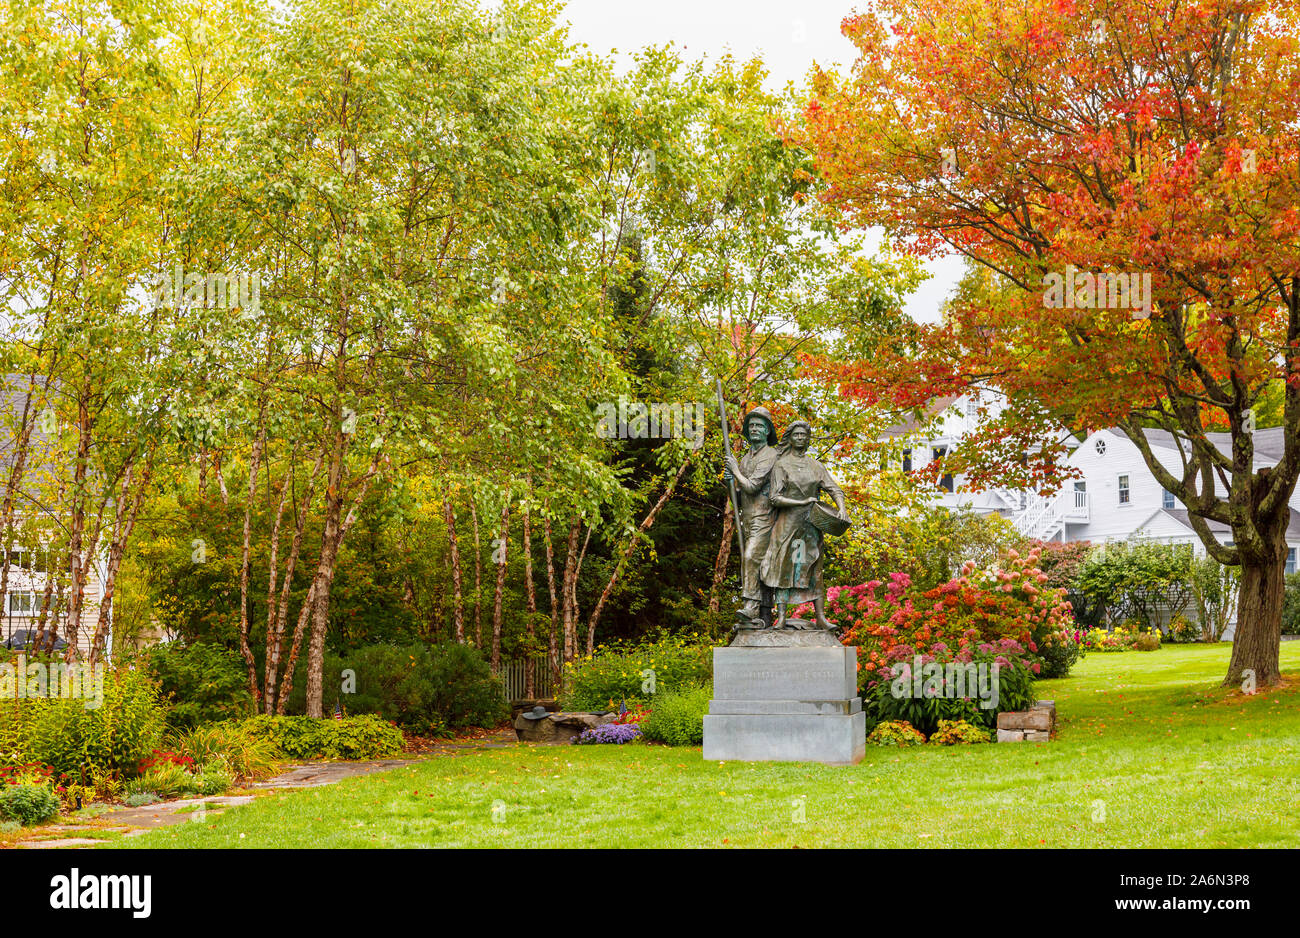 Statua "i nostri antenati della costa" da Frank W Gestore, Kennebunkport River Green, un parco pubblico e spazio aperto, Kennebunkport, Maine, New England, US Foto Stock